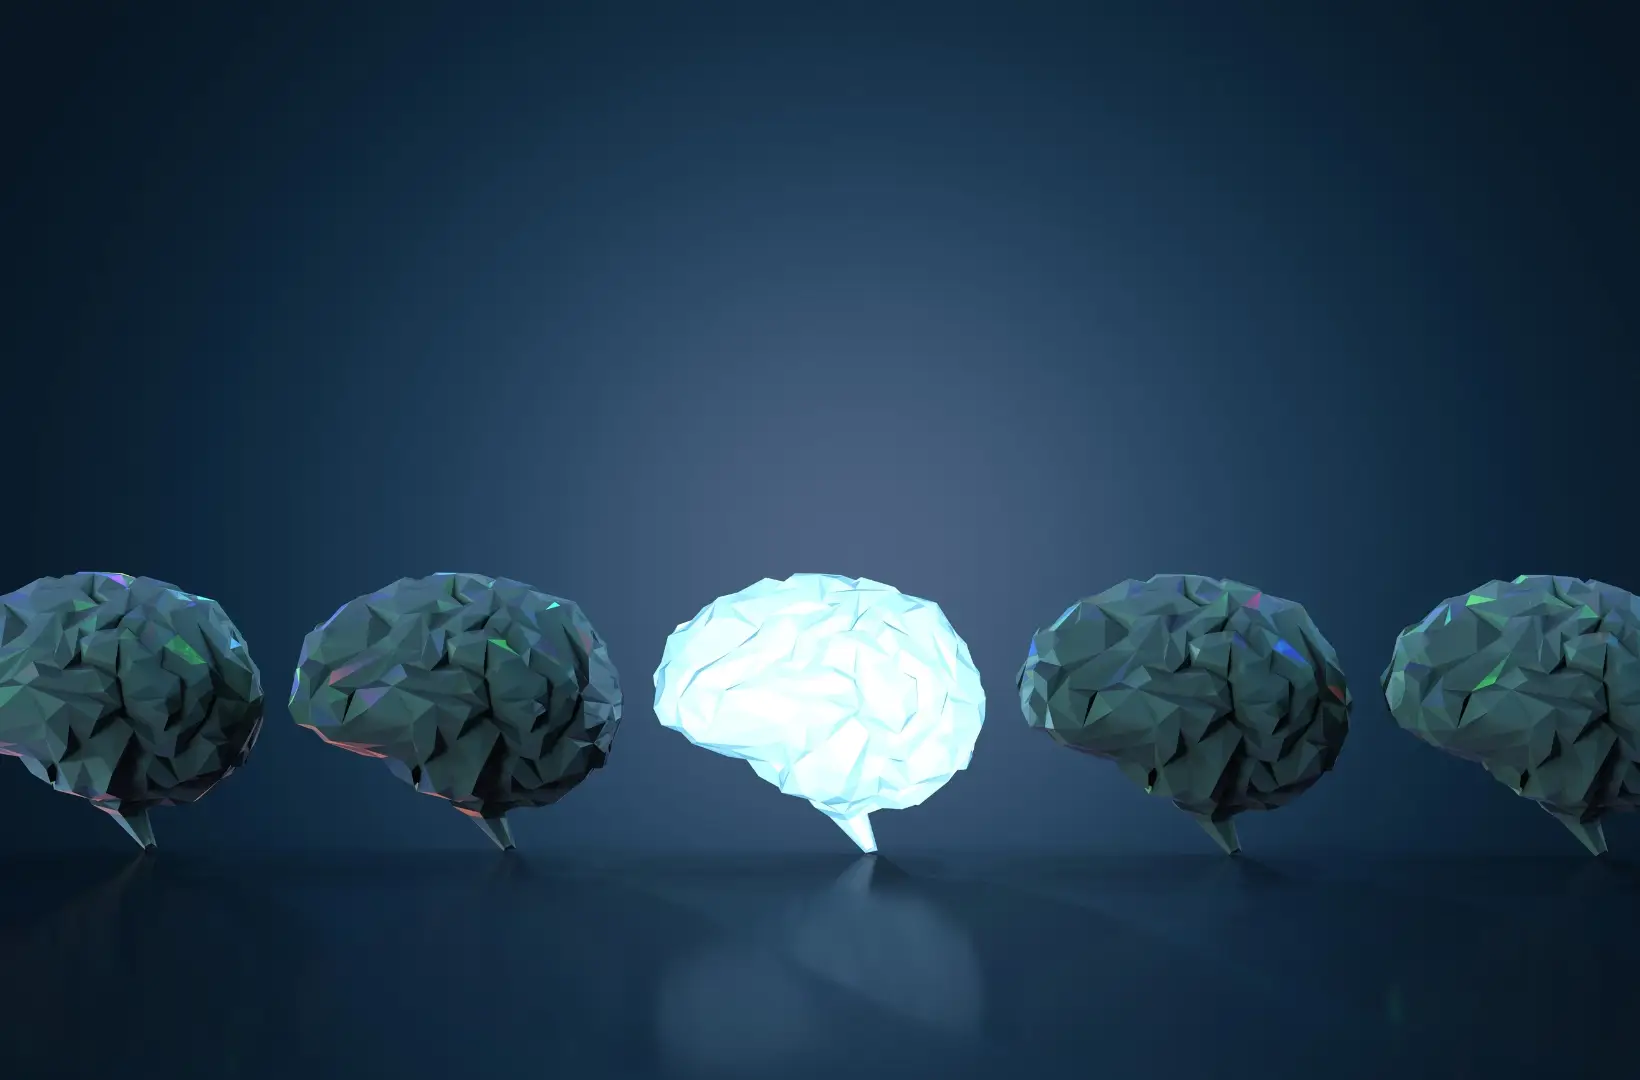 Estímulos elétricos no cérebro para tratar depressão? Técnica está a ser estudada